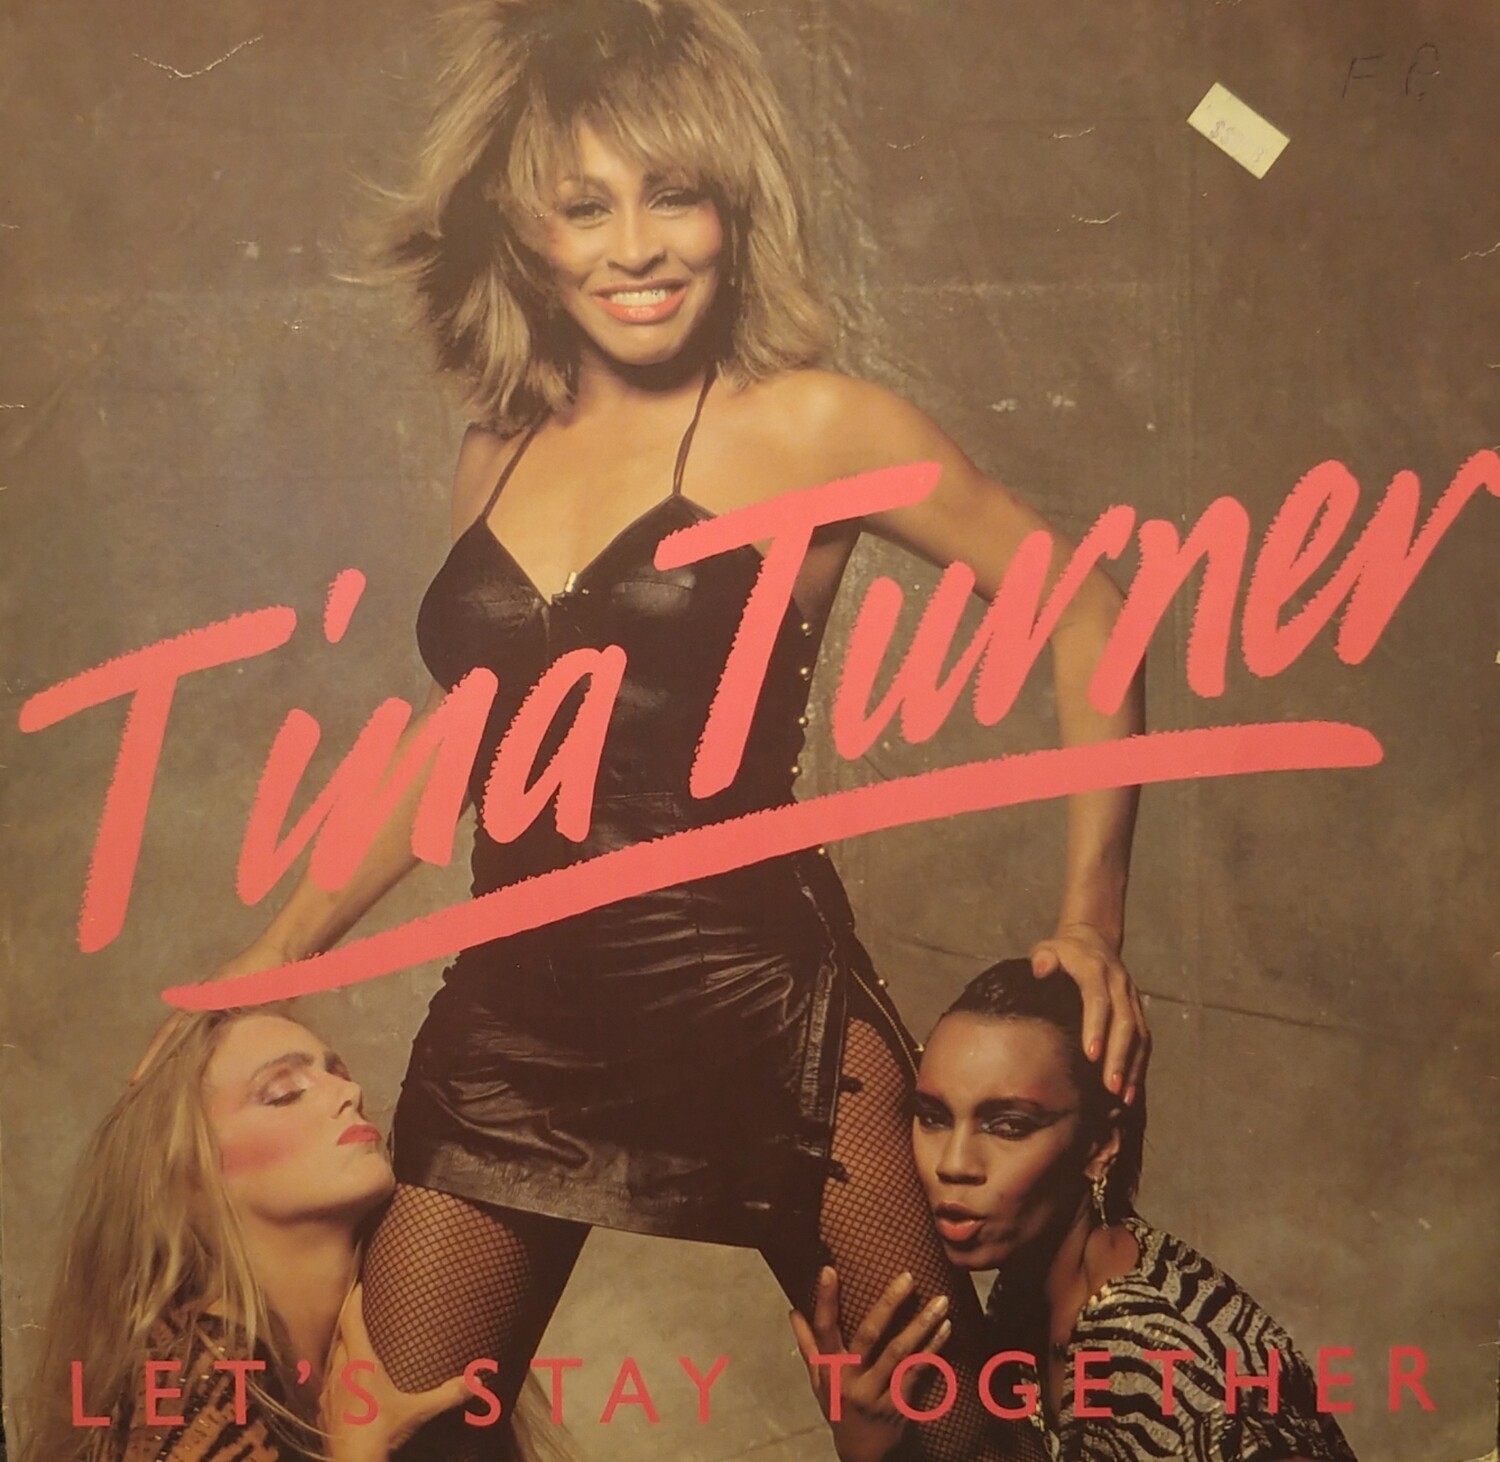 Tina Turner - Let's stay together